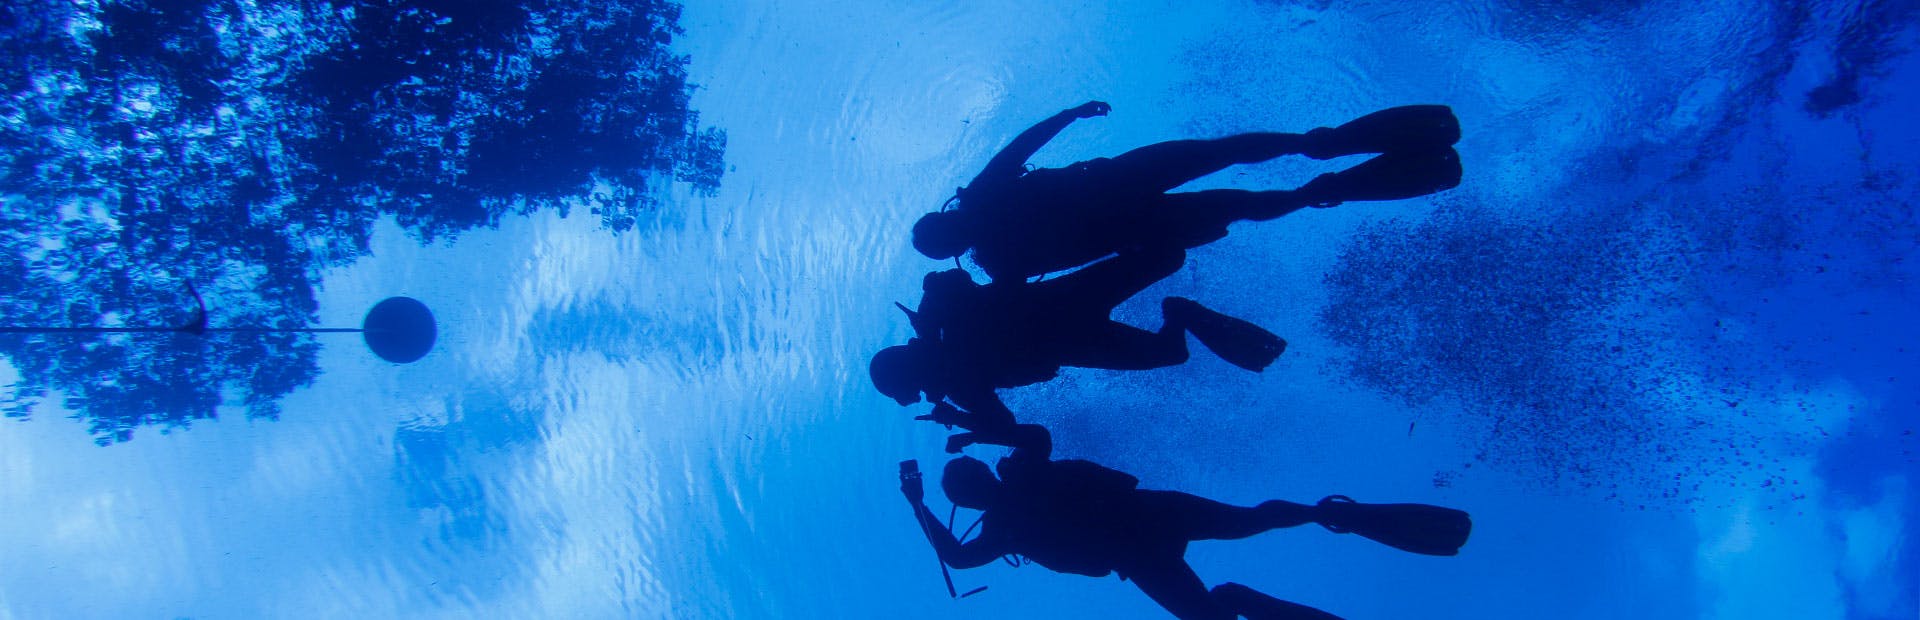 Sombra de pessoas nadando com equipamentos de mergulho de dentro da água em Bonito/MS.